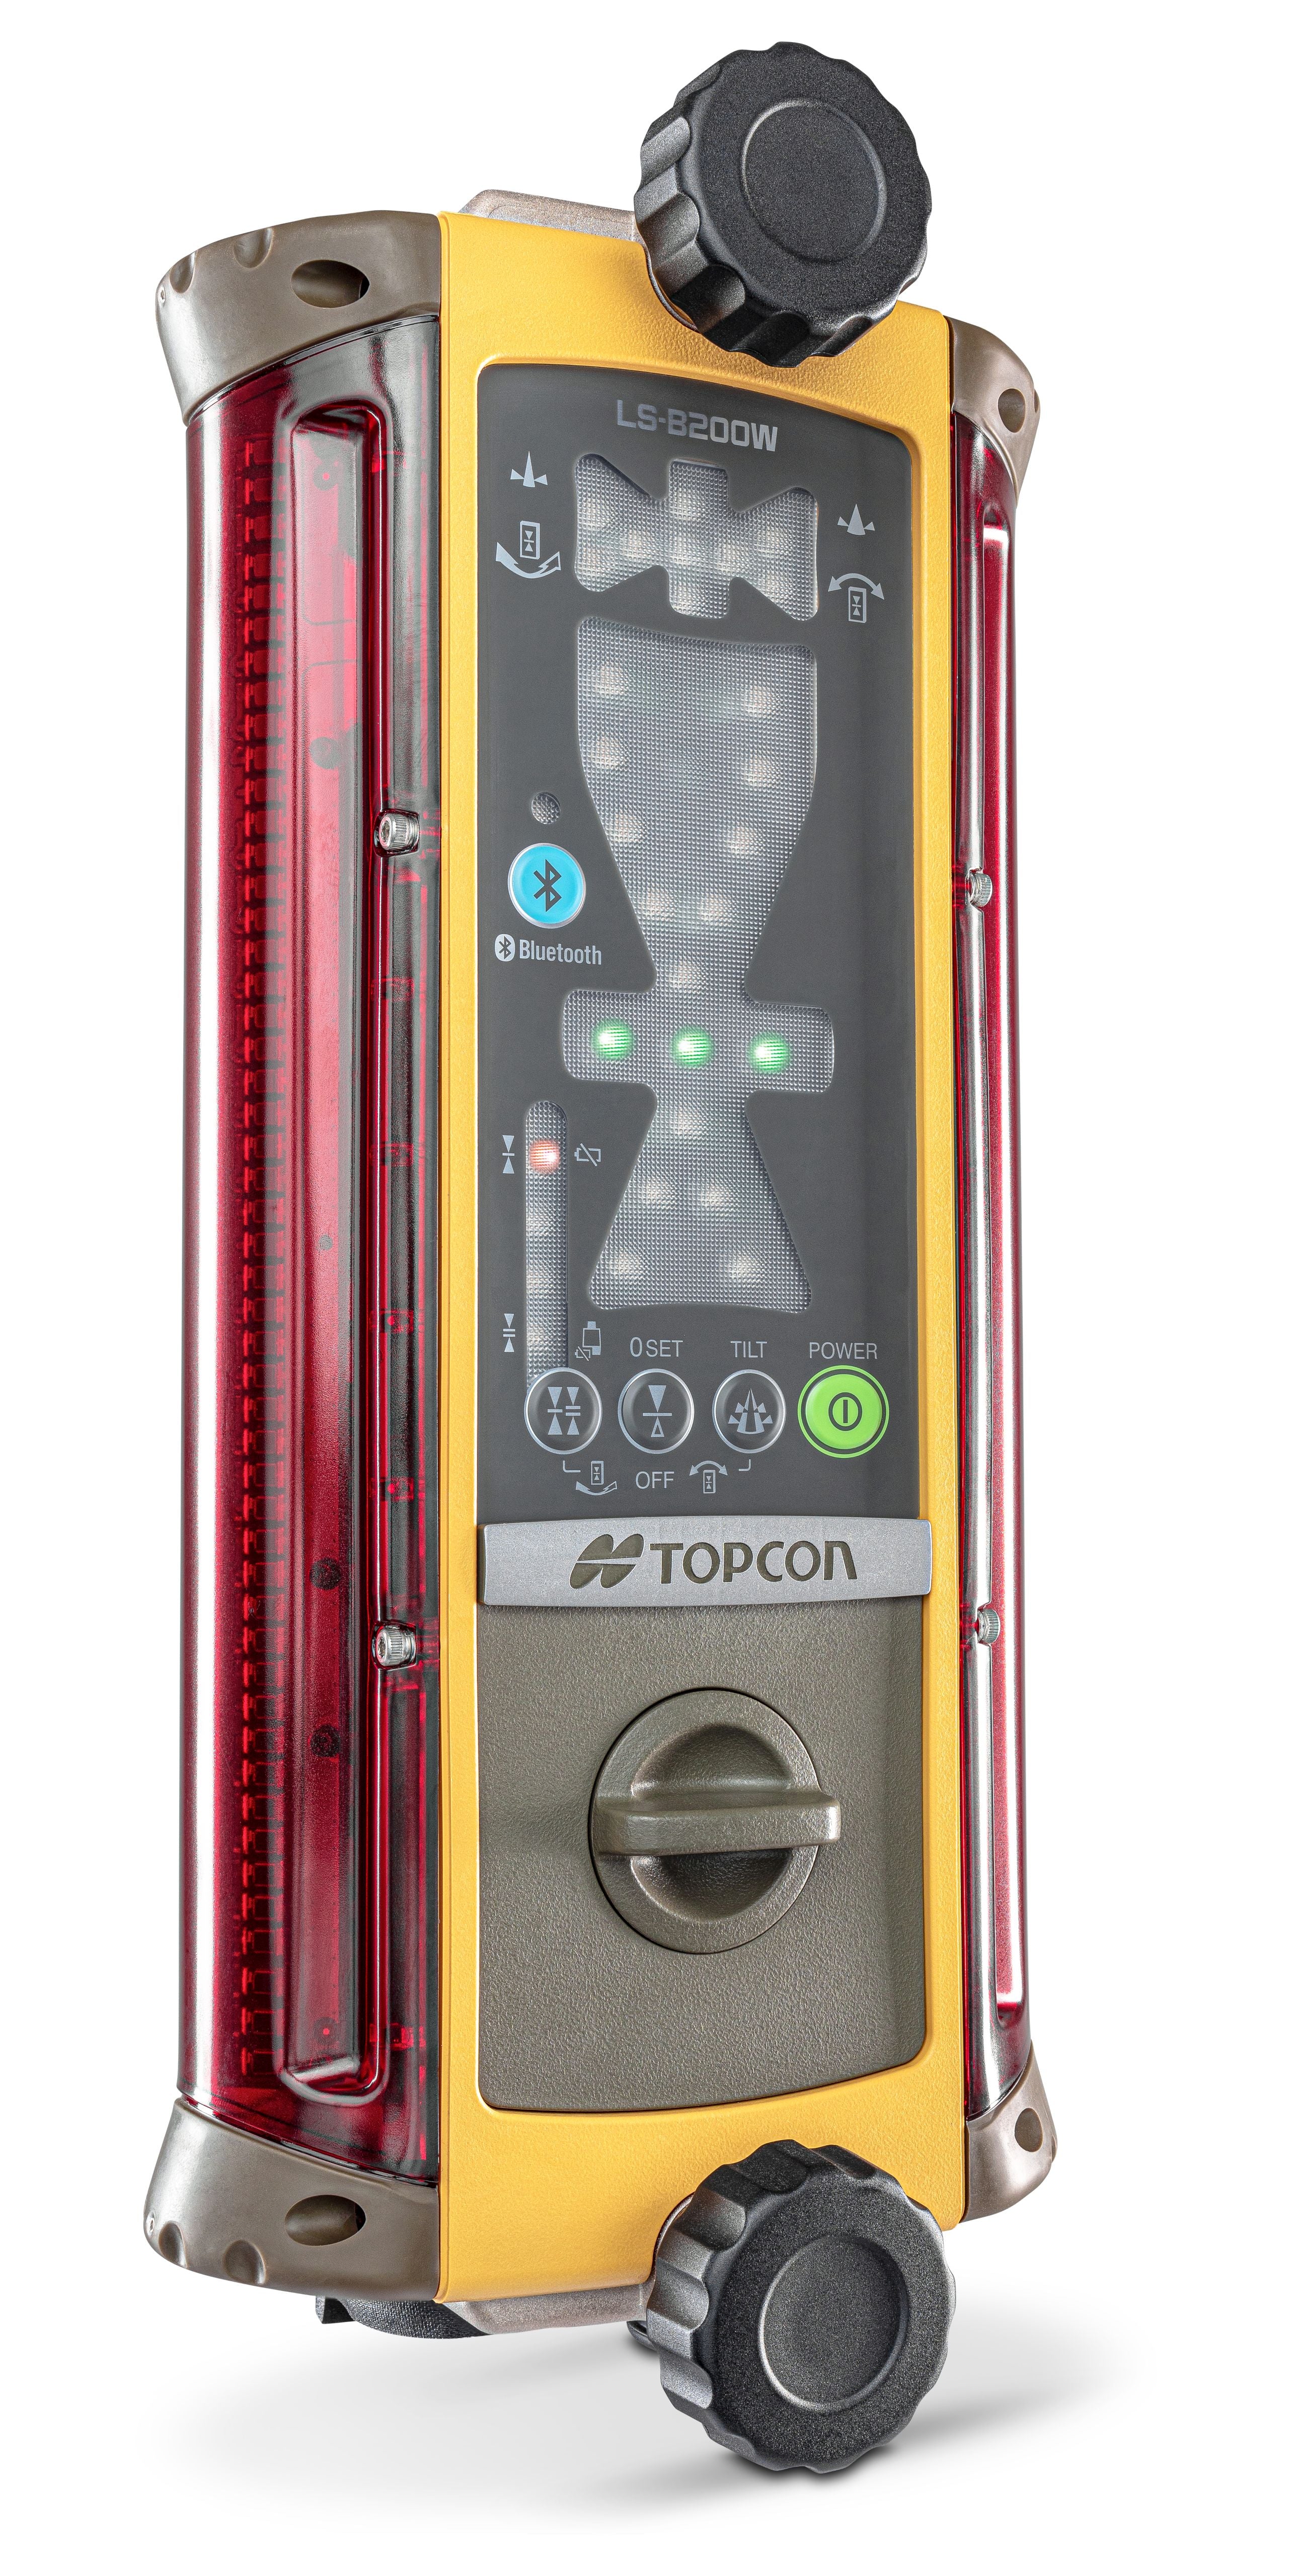 Topcon LS-B200 Machine Control Laser Receiver 1053268-03